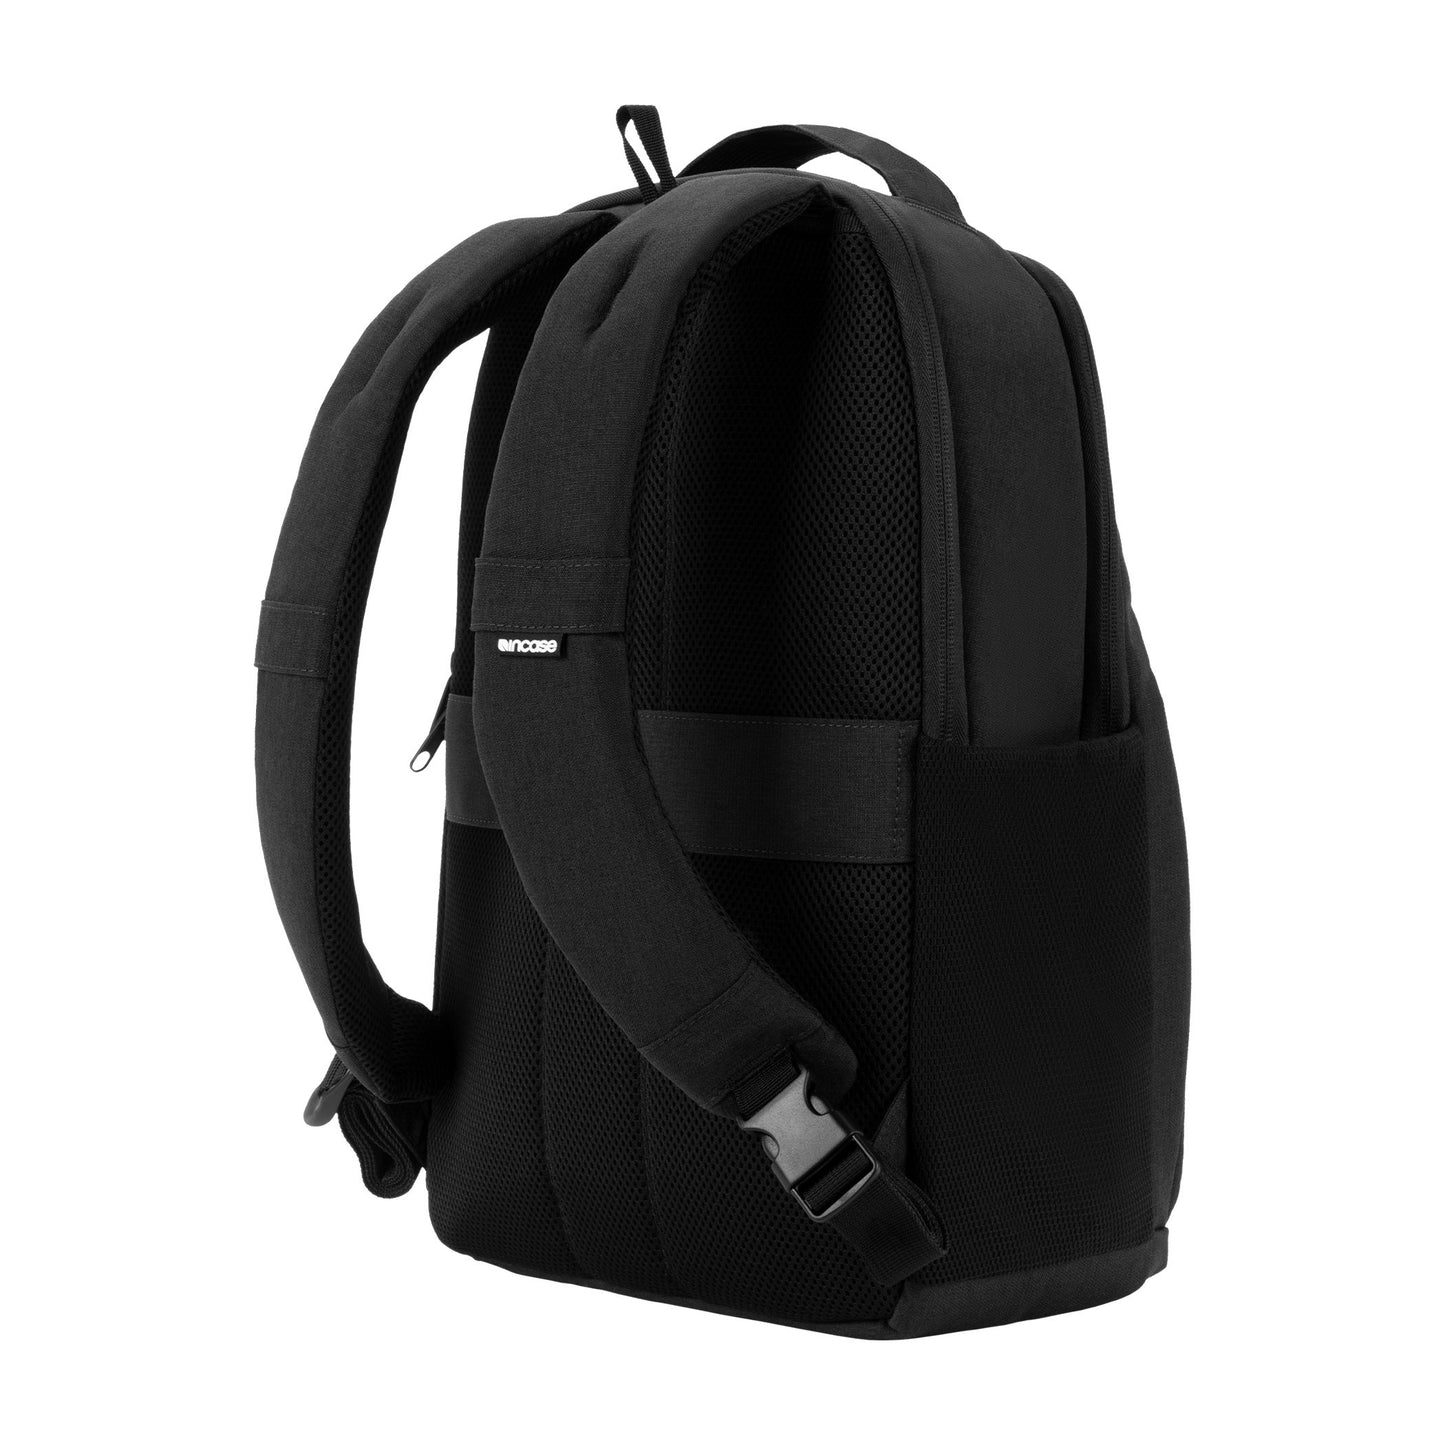 ファセット20lバックパック(Facet 20L Backpack) -黒(ブラック)-軽量-通学-Incase（インケース）公式通販